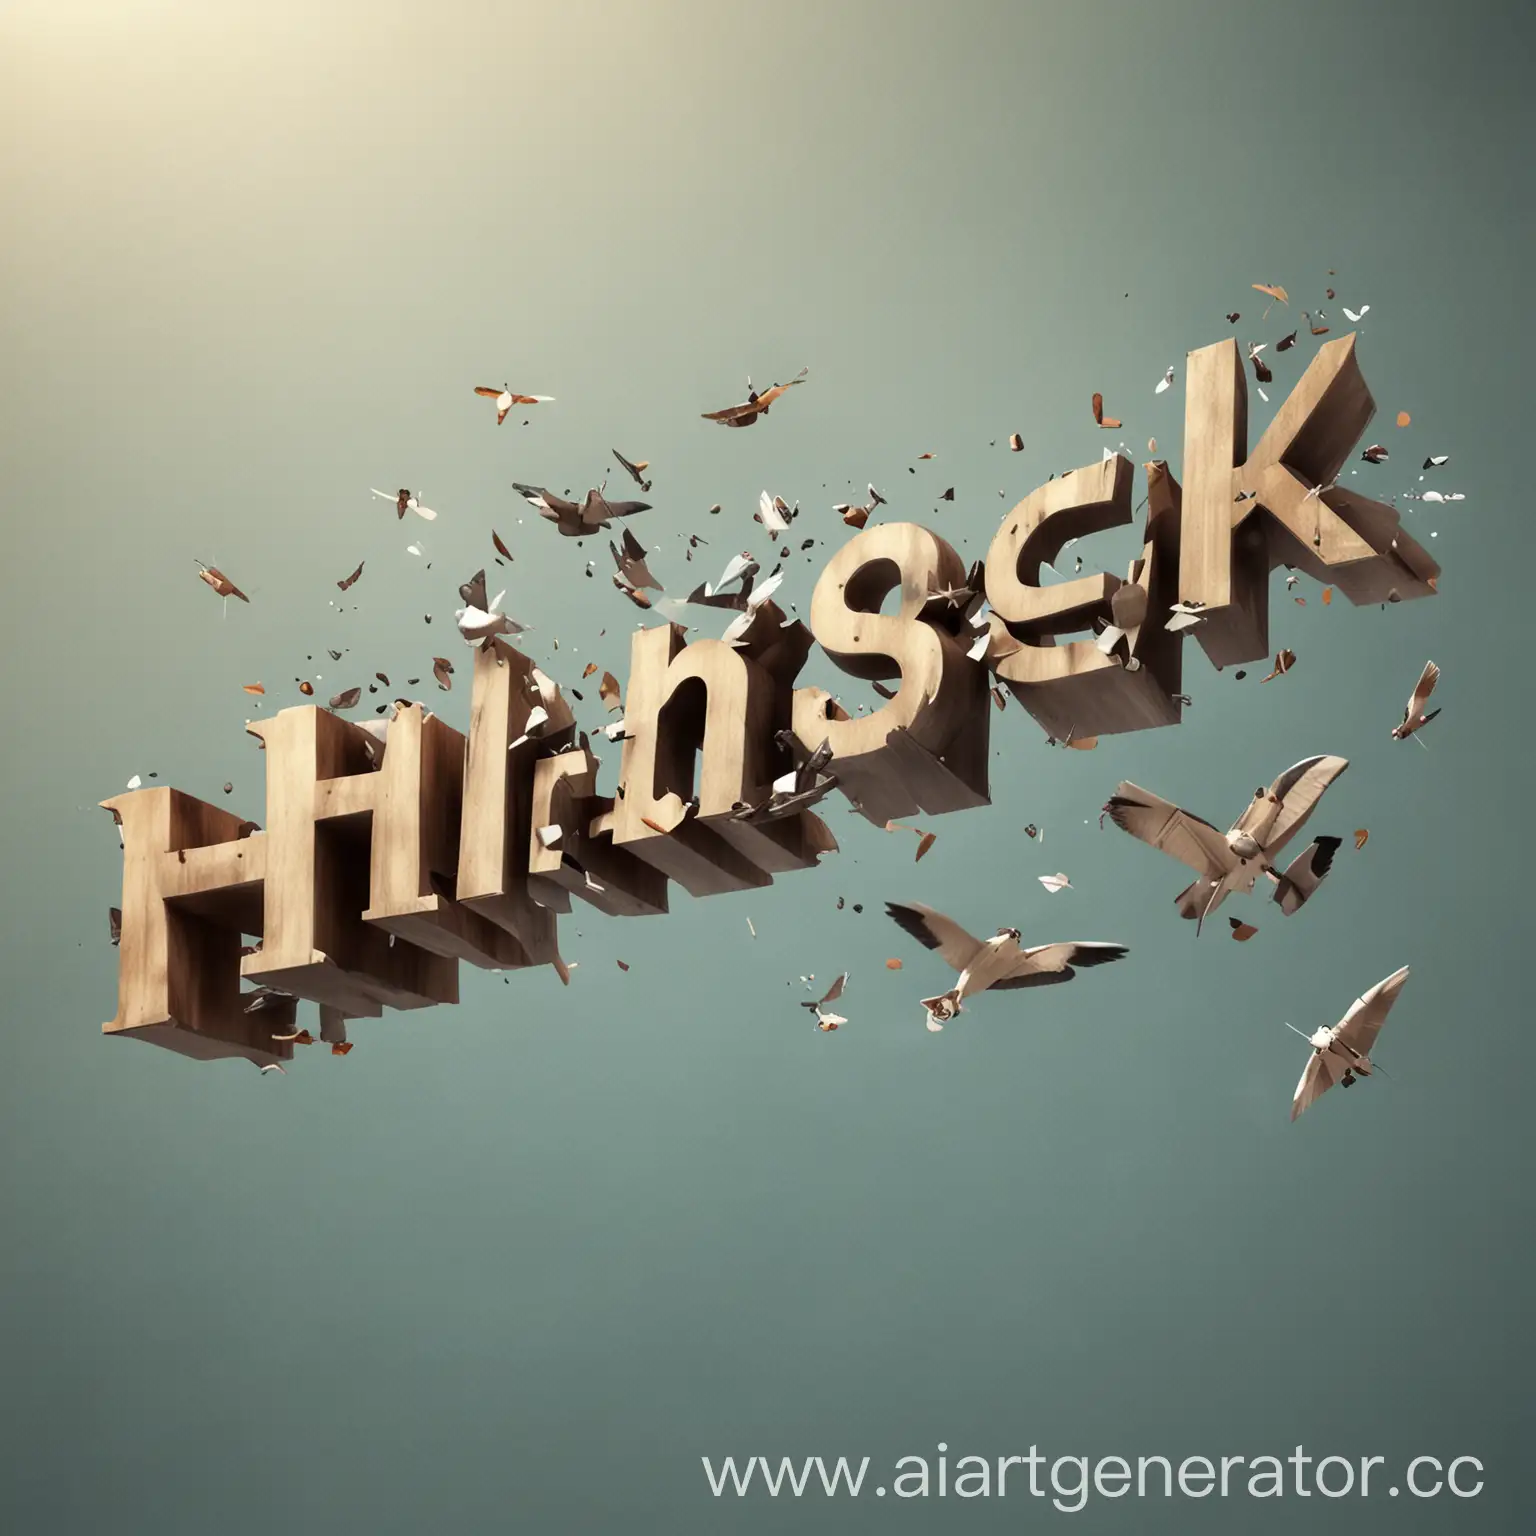 3D word "HlebusheK" flying